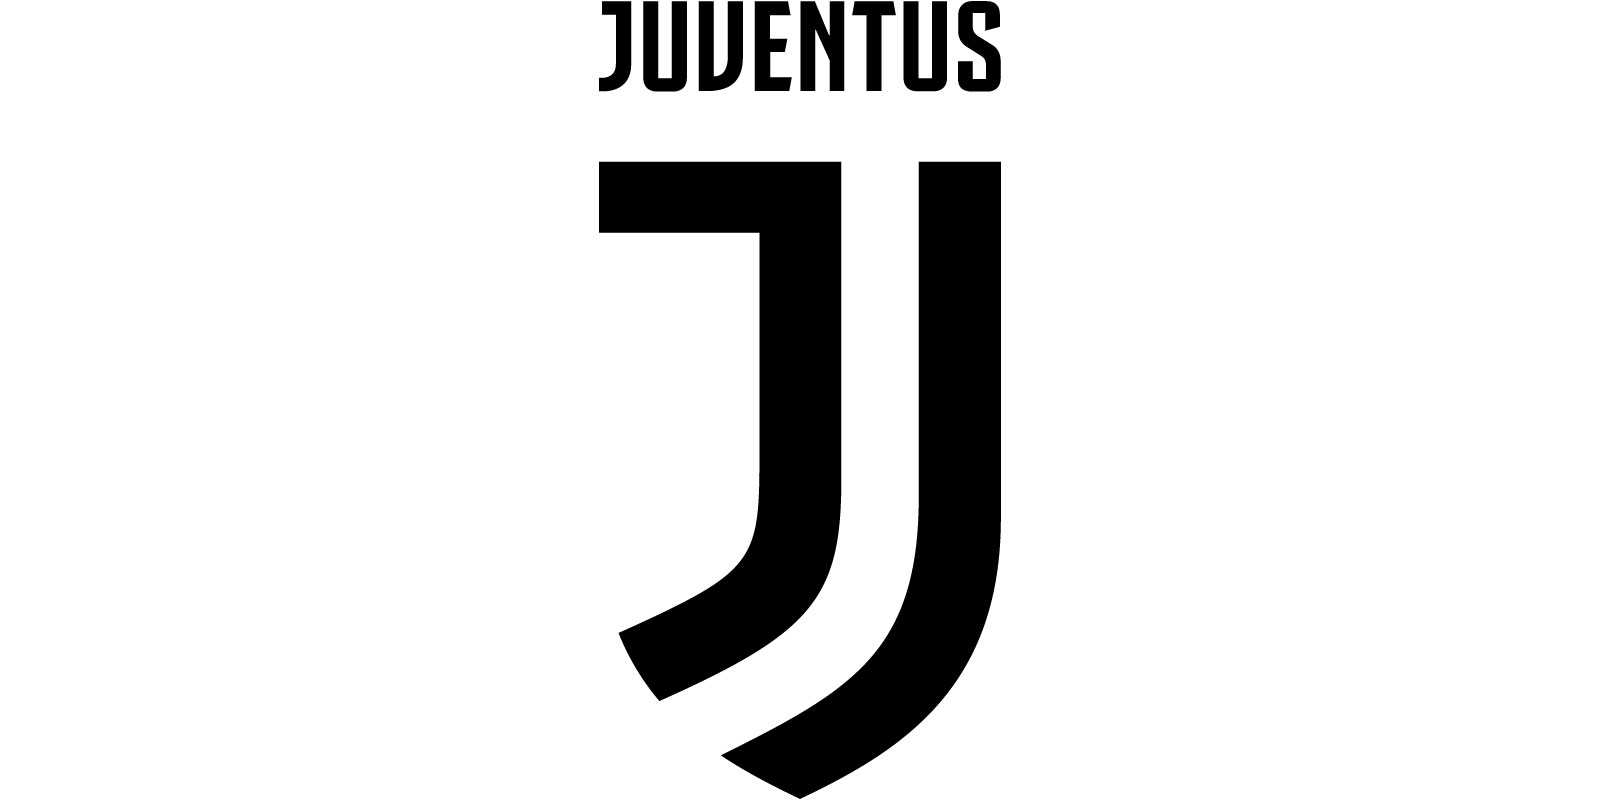 Juventus FC logo (the club)